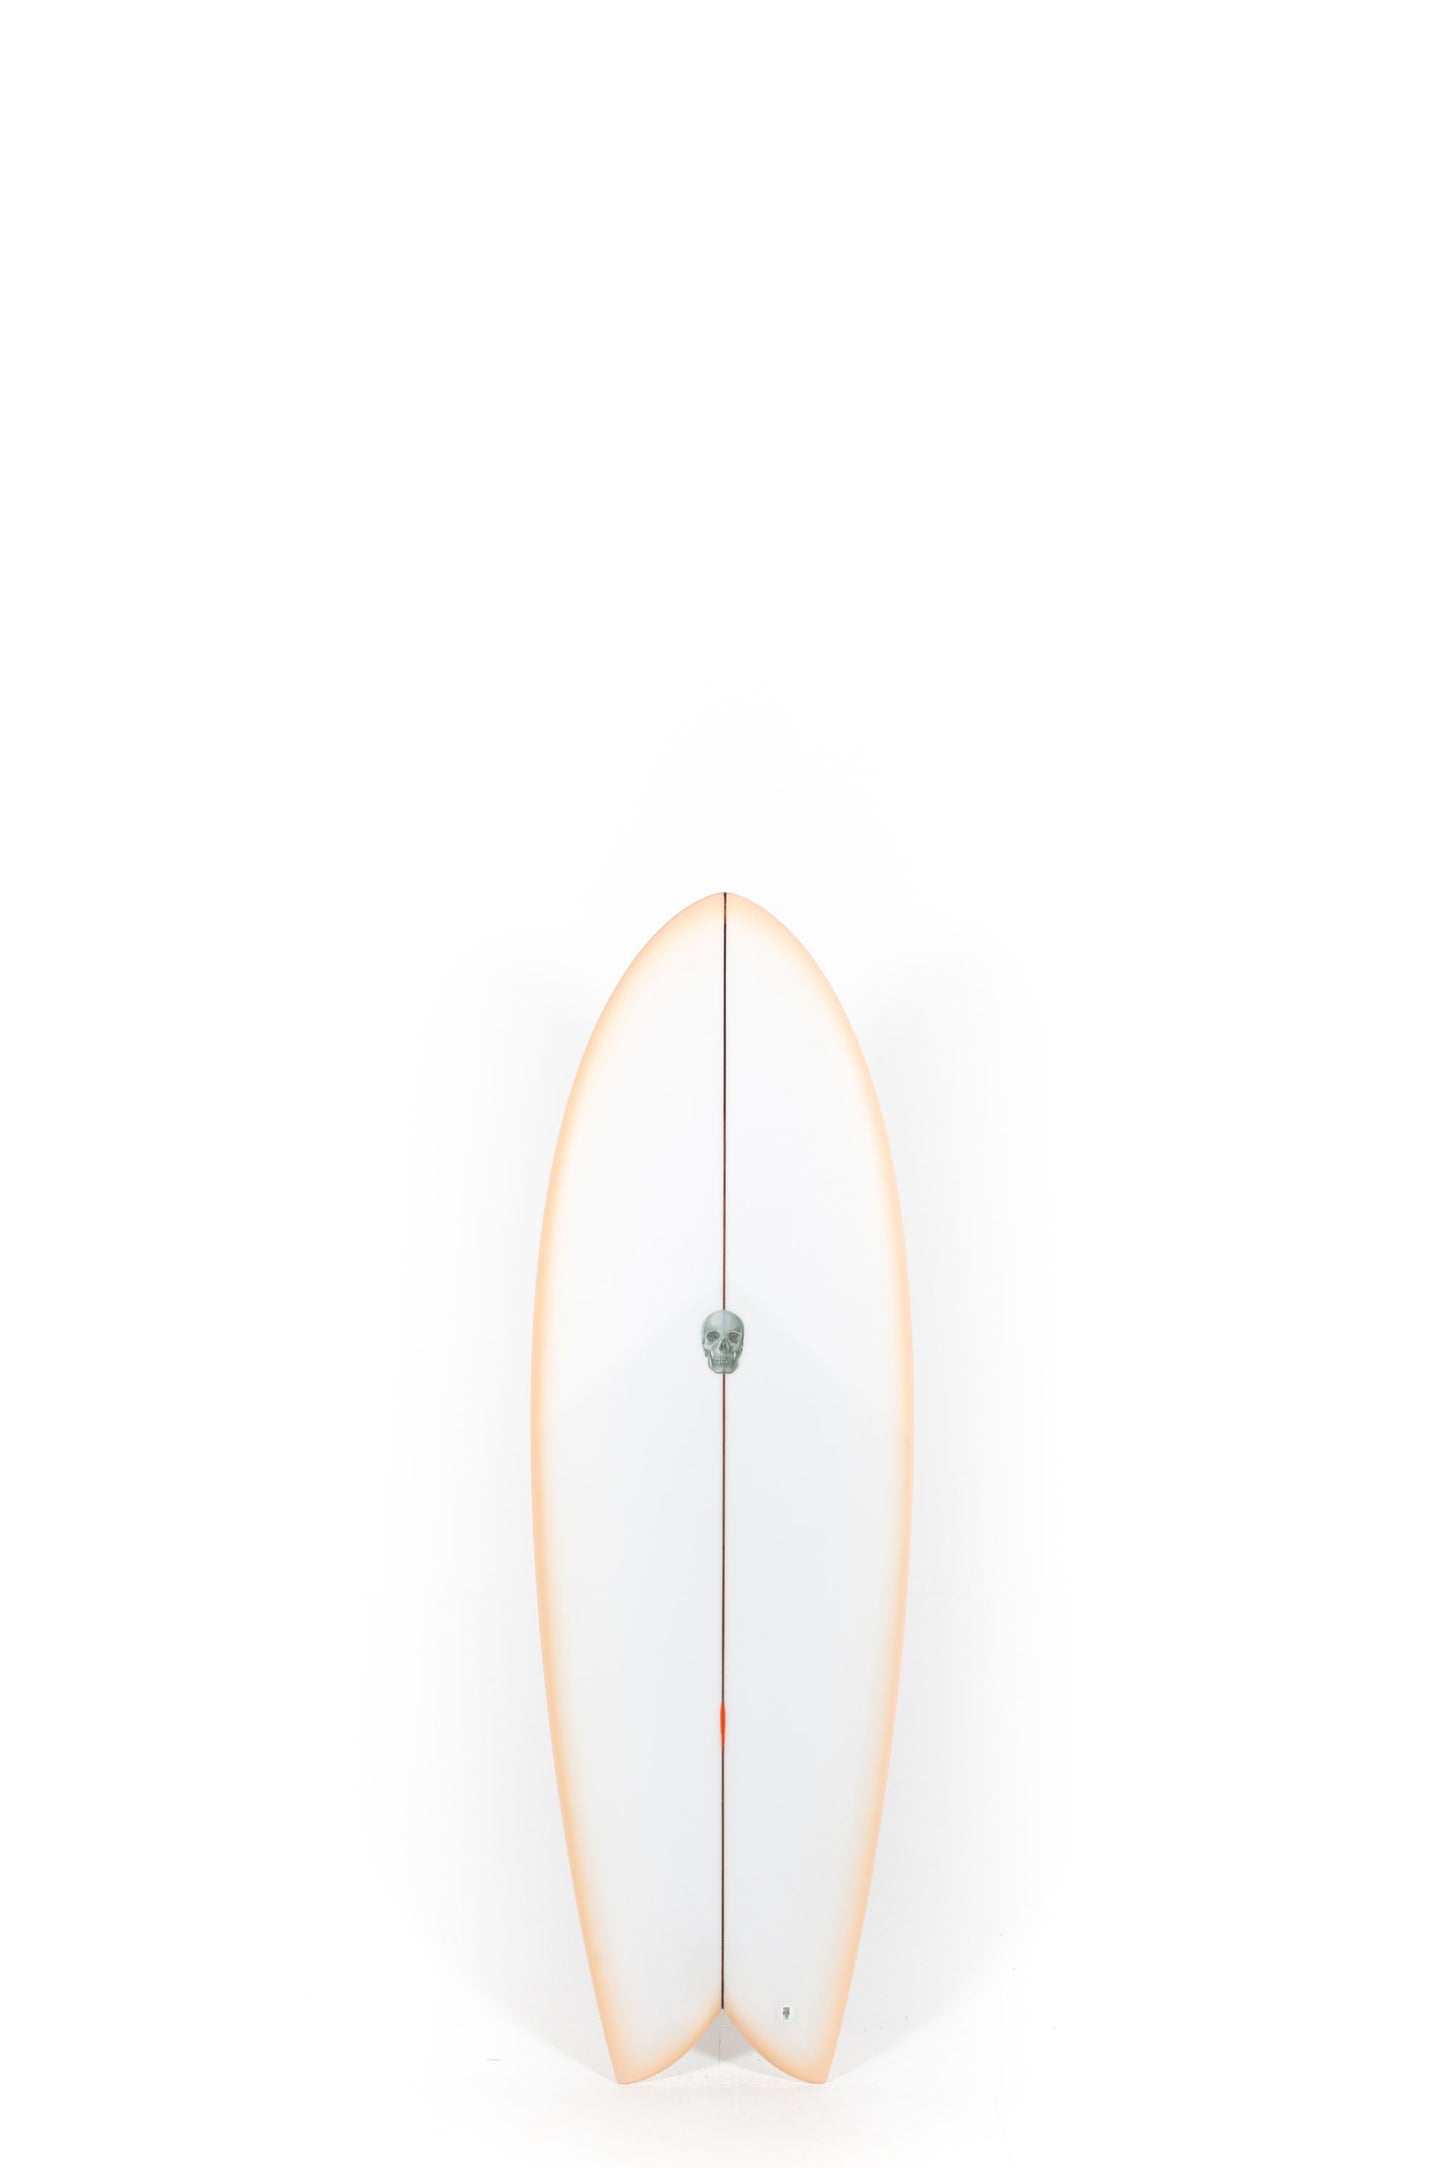 Pukas Surf Shop - Christenson Surfboards - MYCONAUT - 5'3" x 20 1/4 x 2 3/8 - CX04053